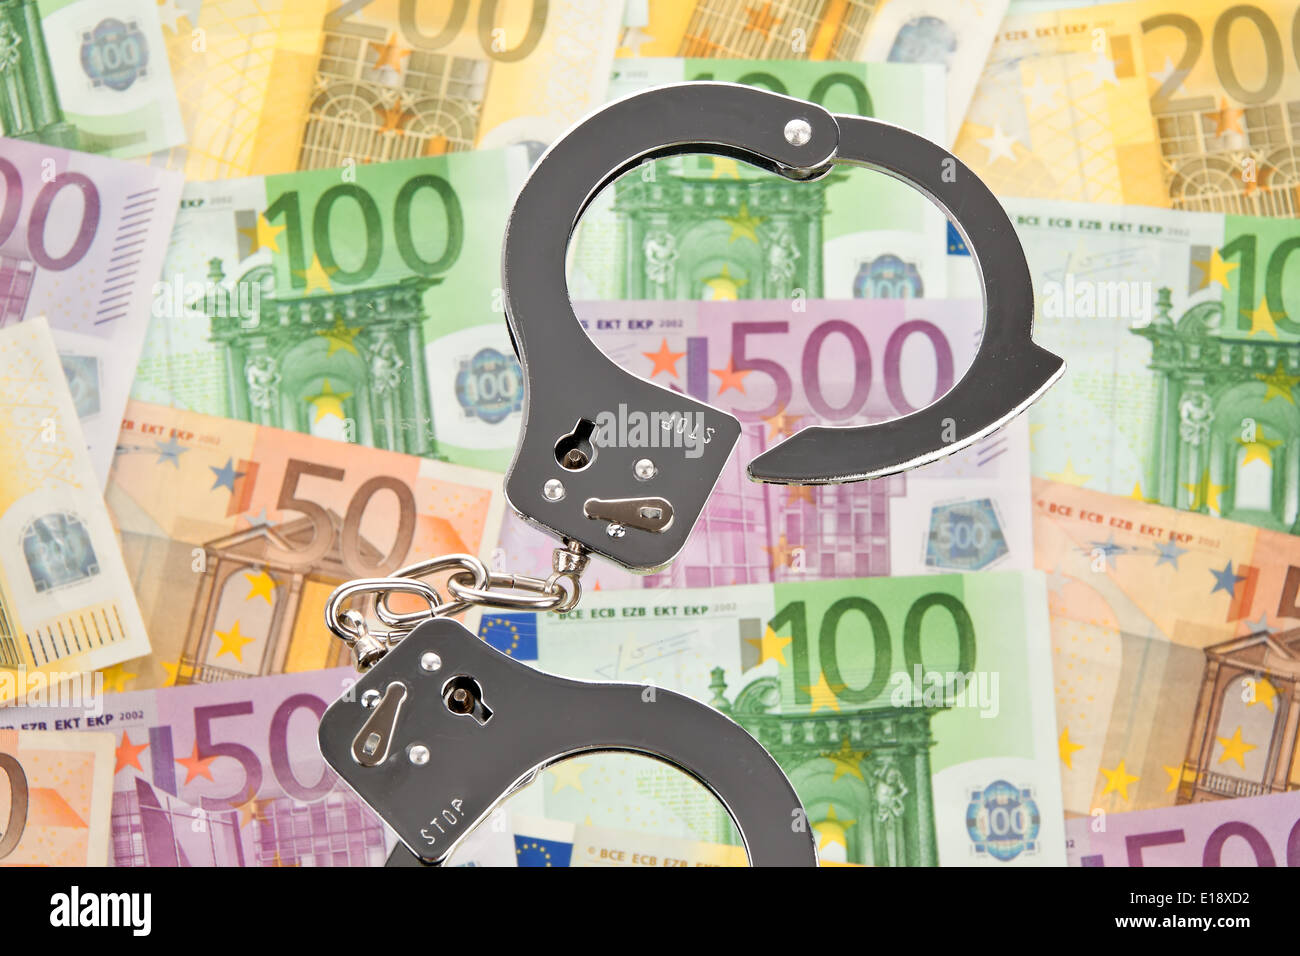 Viele Euro Geldscheine mit Handschellen. Symbolphoto Wirtschaftskriminalitaet Stock Photo